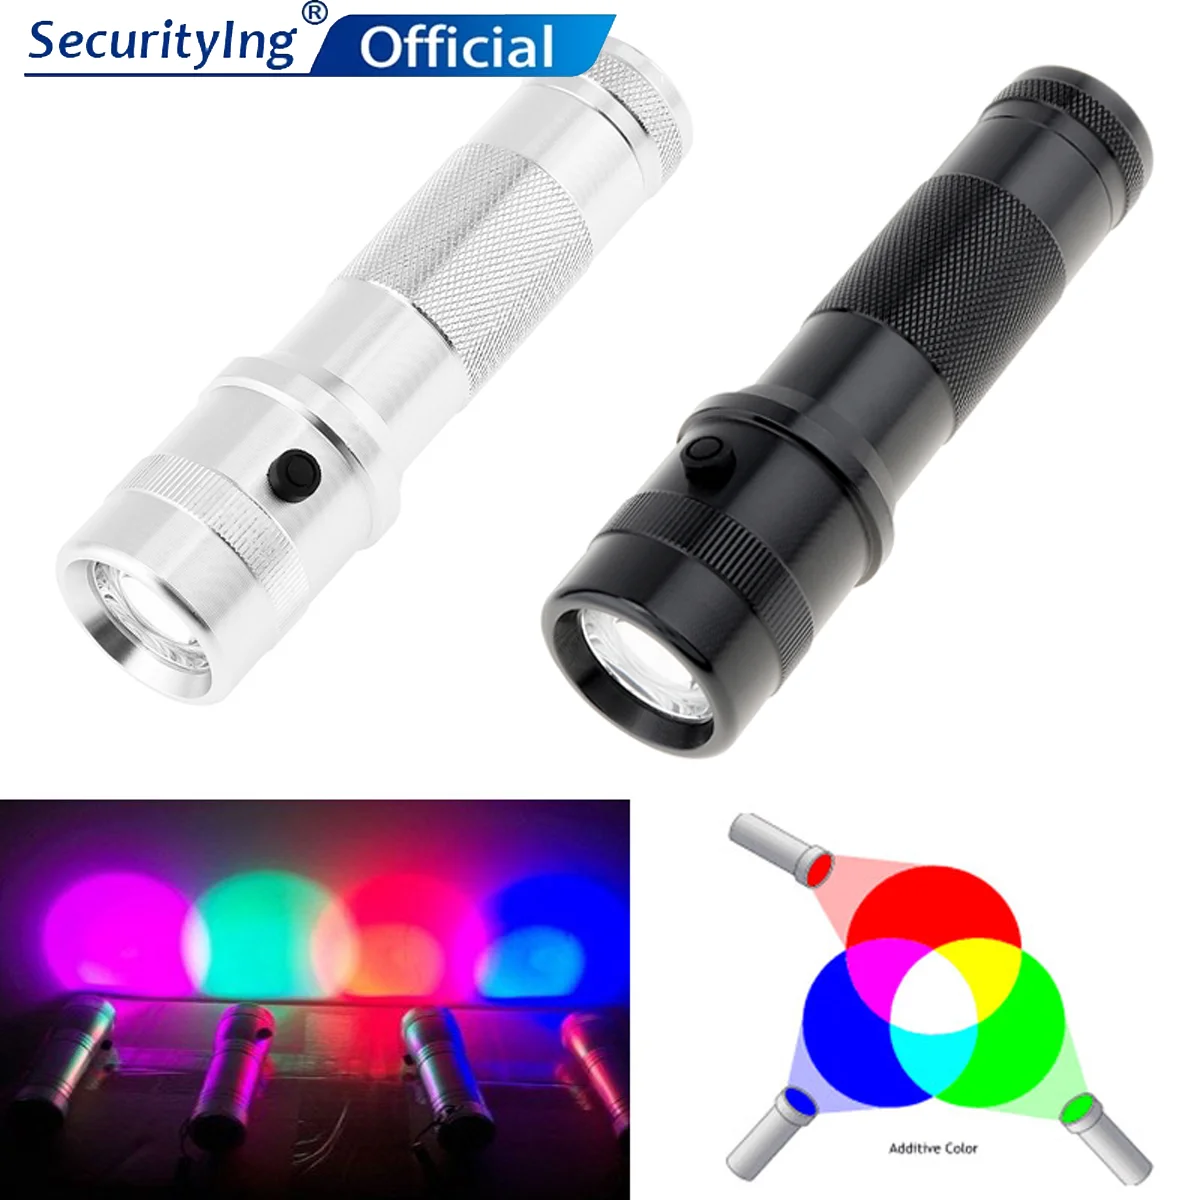 SecurityIng 10 în 1 LED Lanternă Tactică Colorshine Culoare Lumina RGB Schimbarea Edison Multicolor Lanterna LED-uri pentru Iluminat Zilnic 1